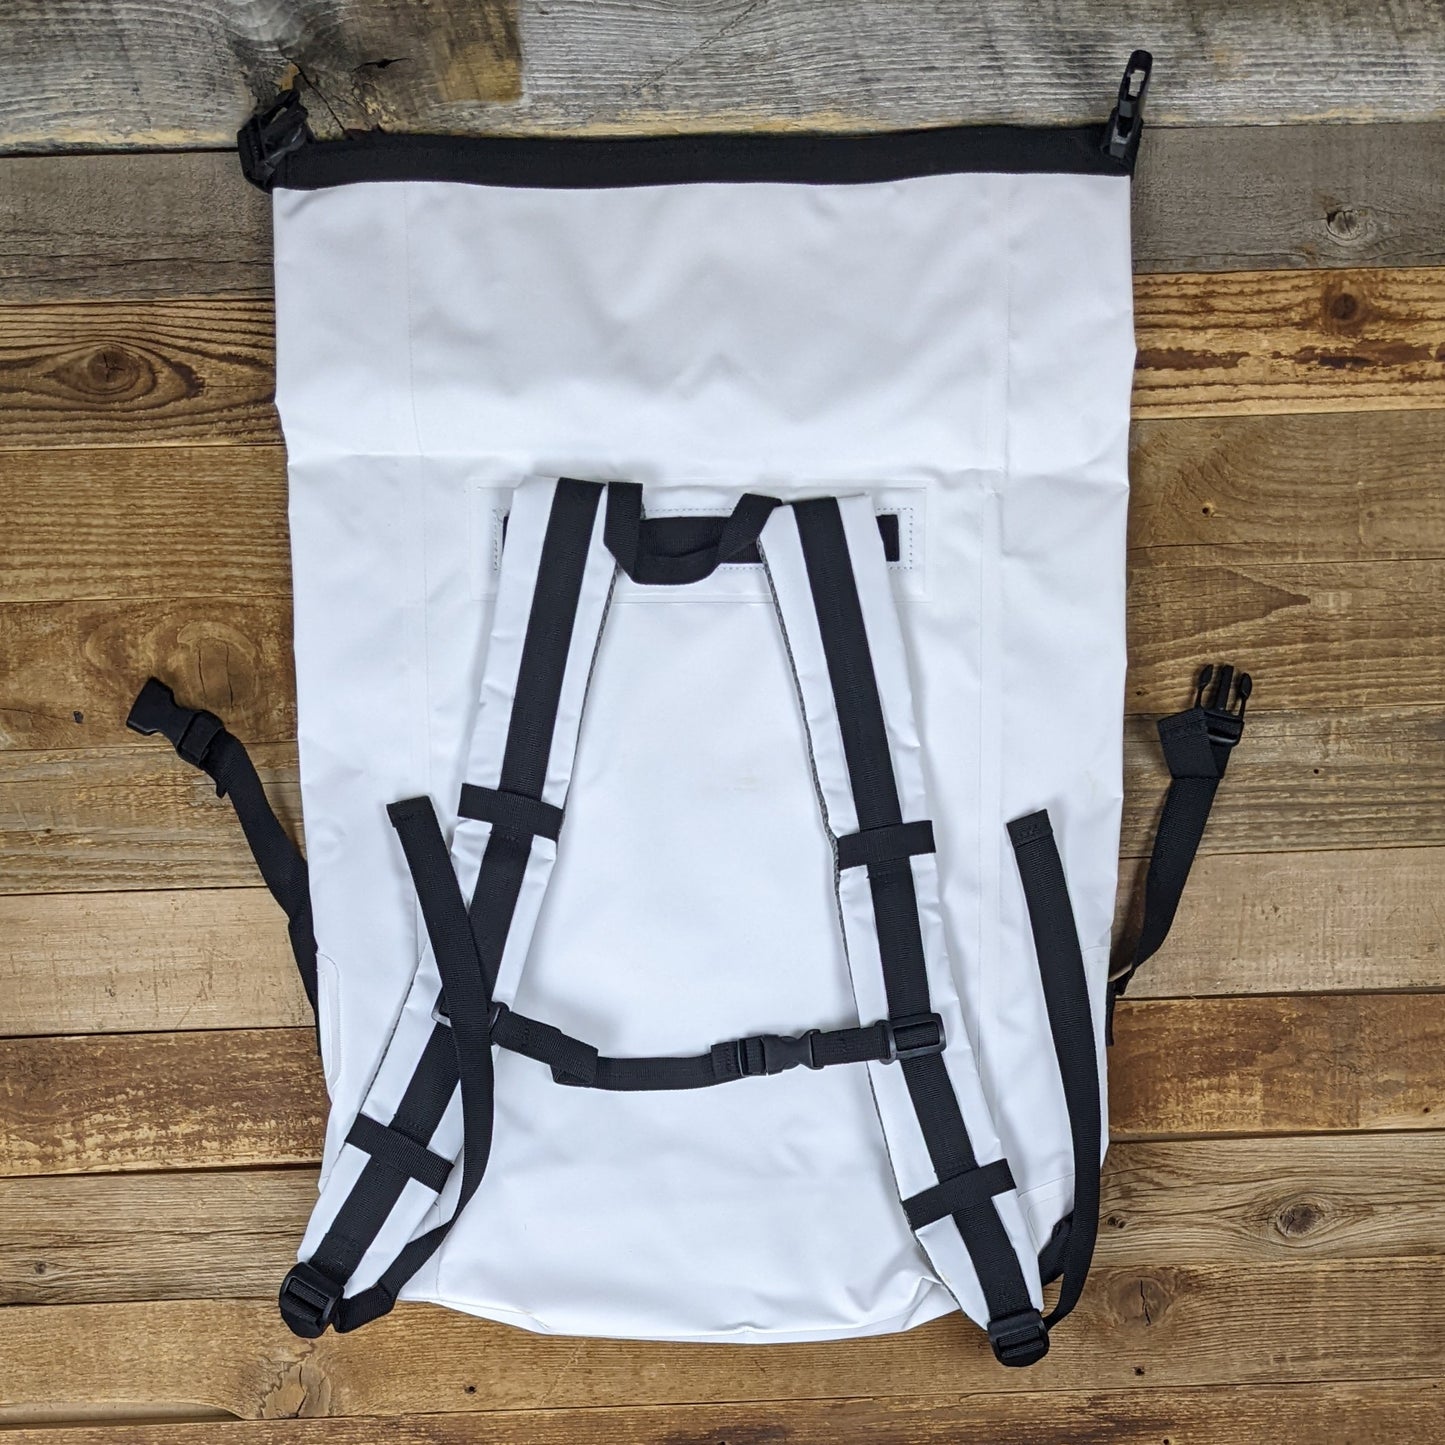 Poler Down River Dry Bag Backpack - White